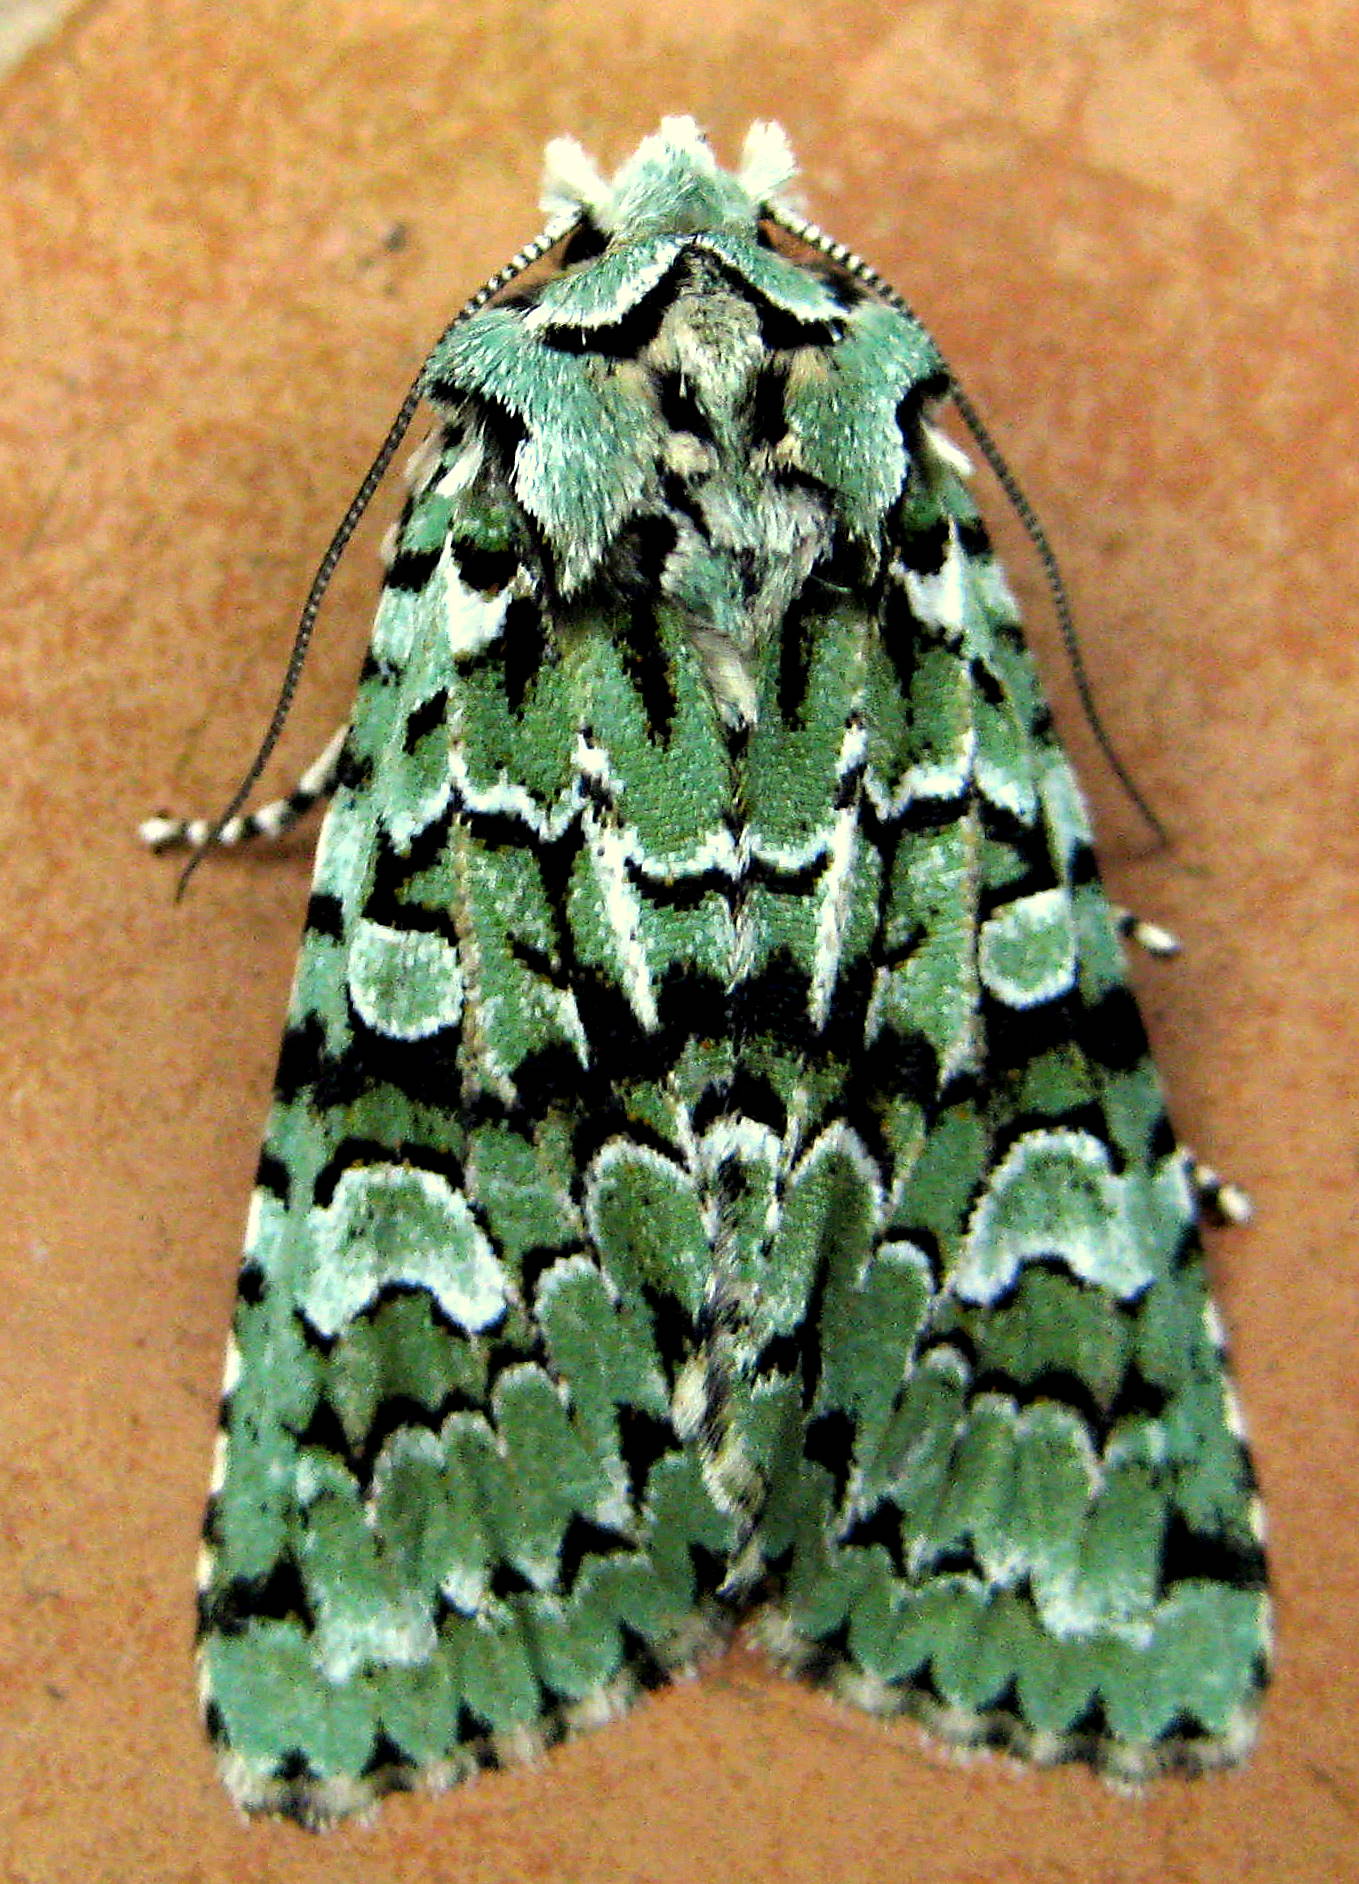 merveille-du-jour-garden-moths-021010-002.jpg